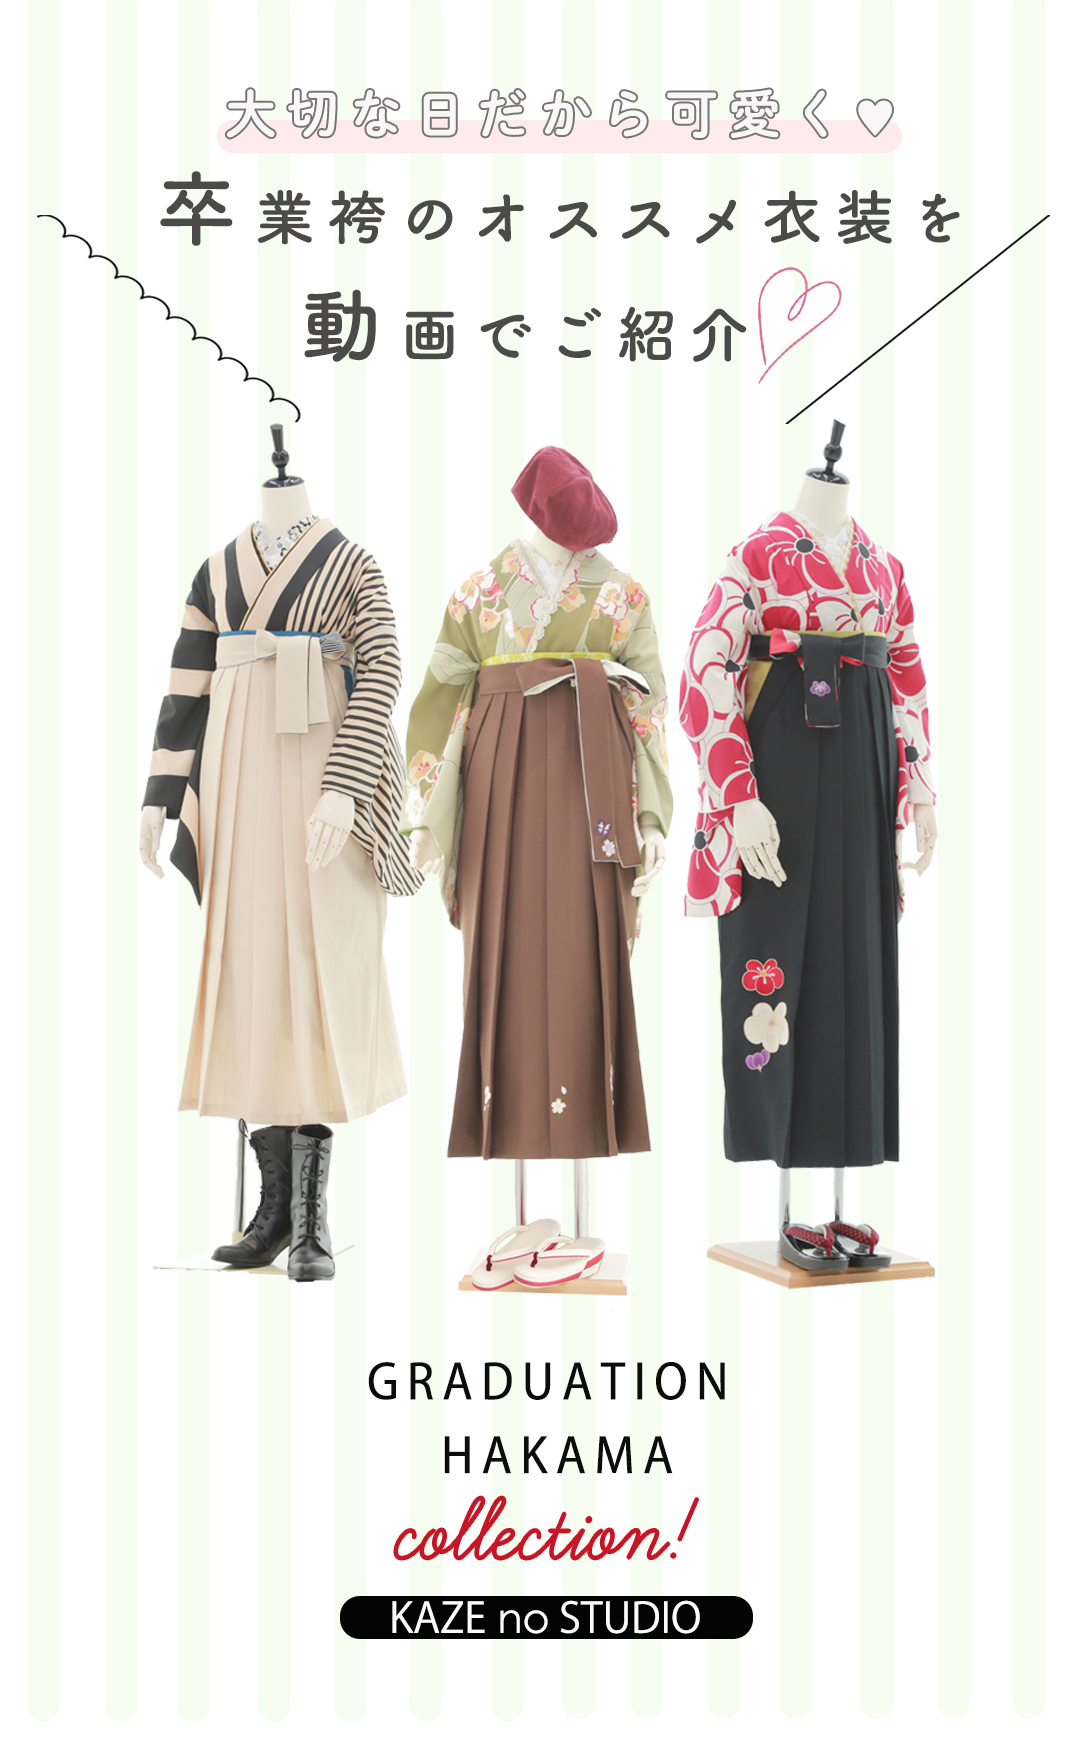 大切な日だから可愛く♥卒業袴のオススメ衣装を動画でご紹介。